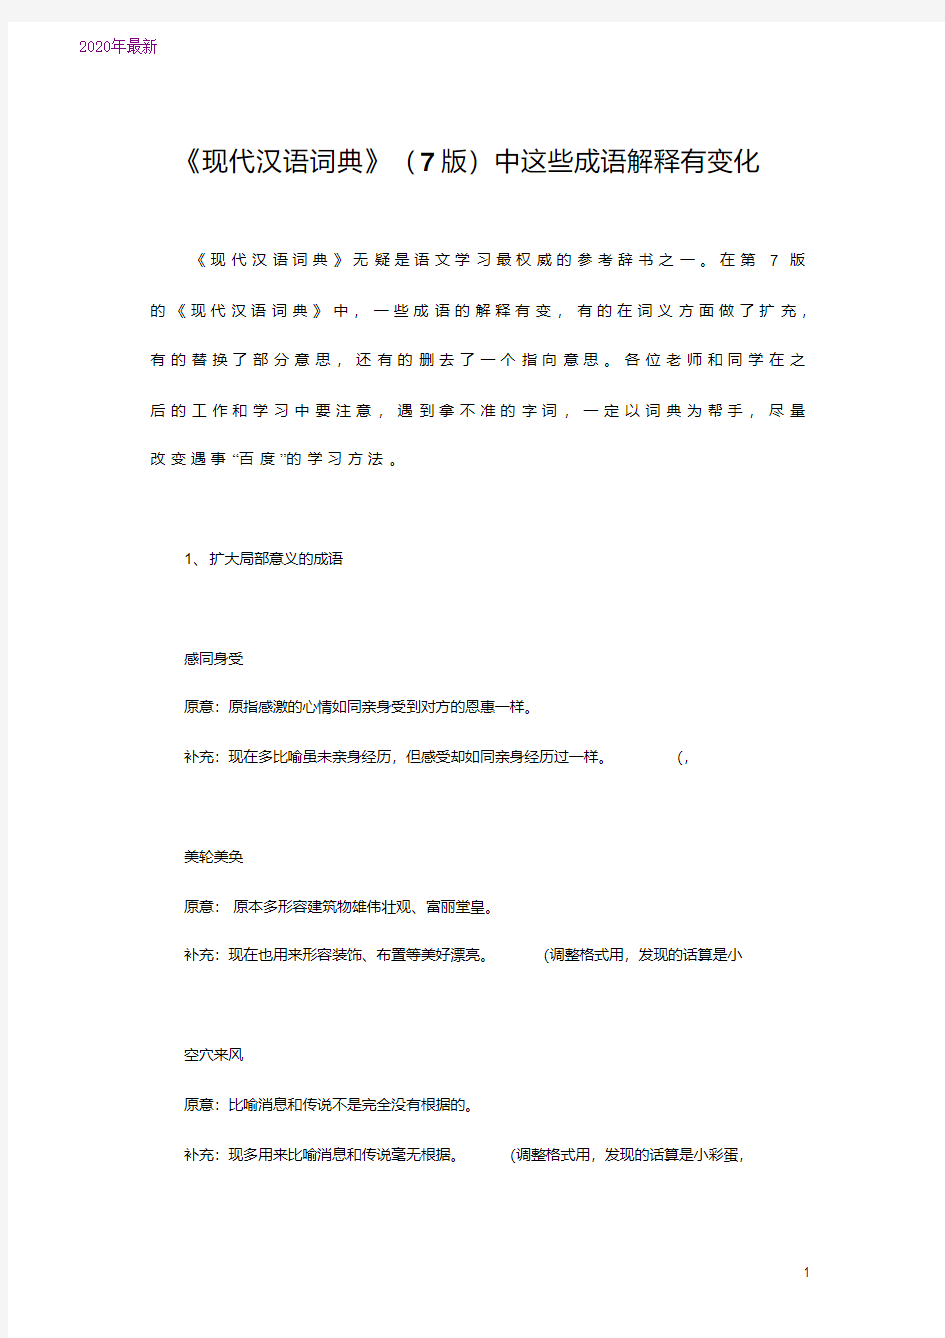 2020现代汉语词典》(7版)中这些成语解释有变化